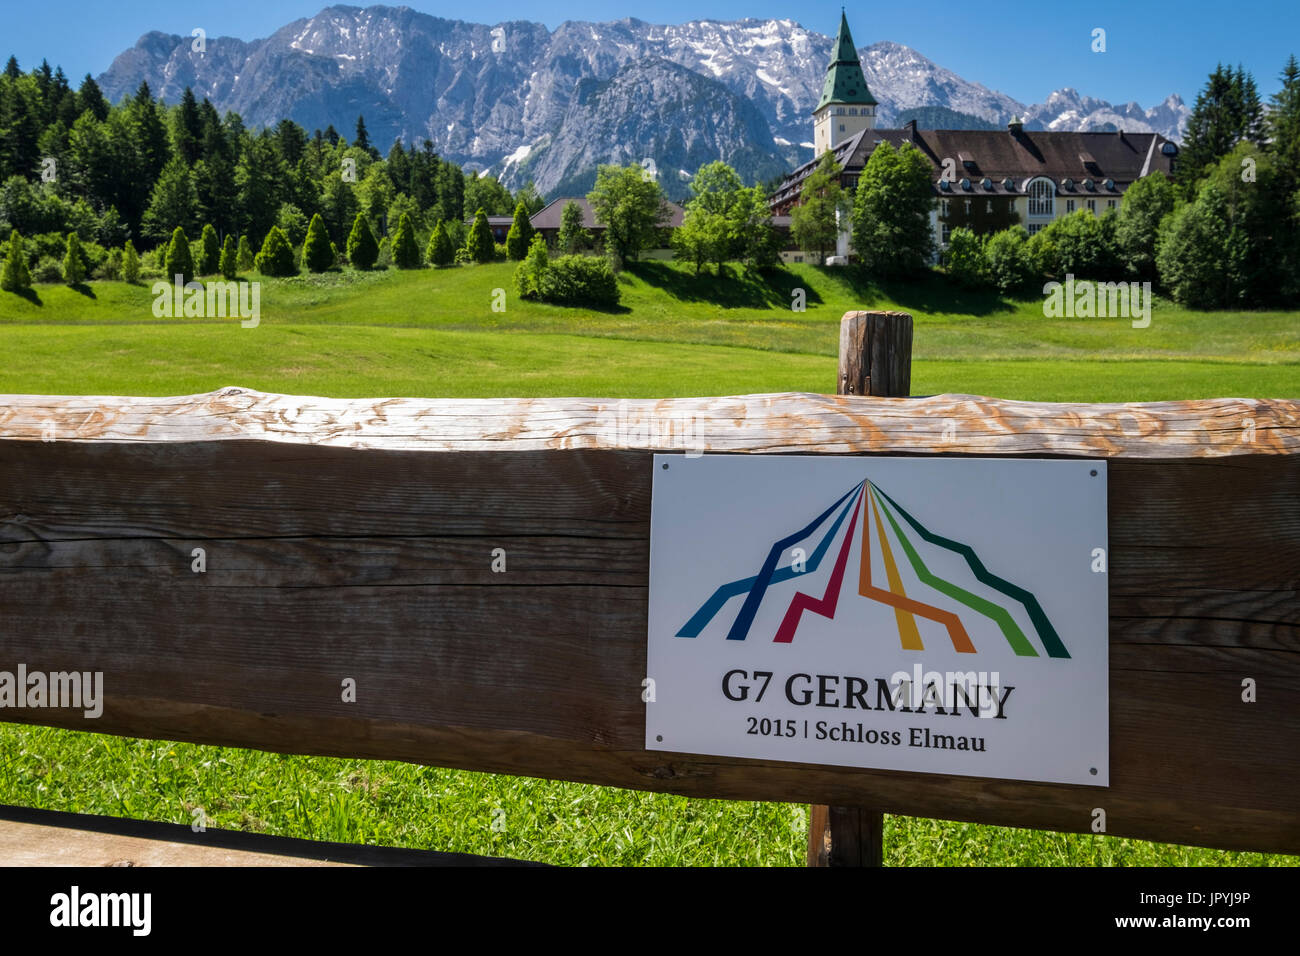 Hotel Schloss Elmau, Zeichen auf Holzbank feststellend Szene des G7-Gipfels in 2015, Bayern, Deutschland Stockfoto